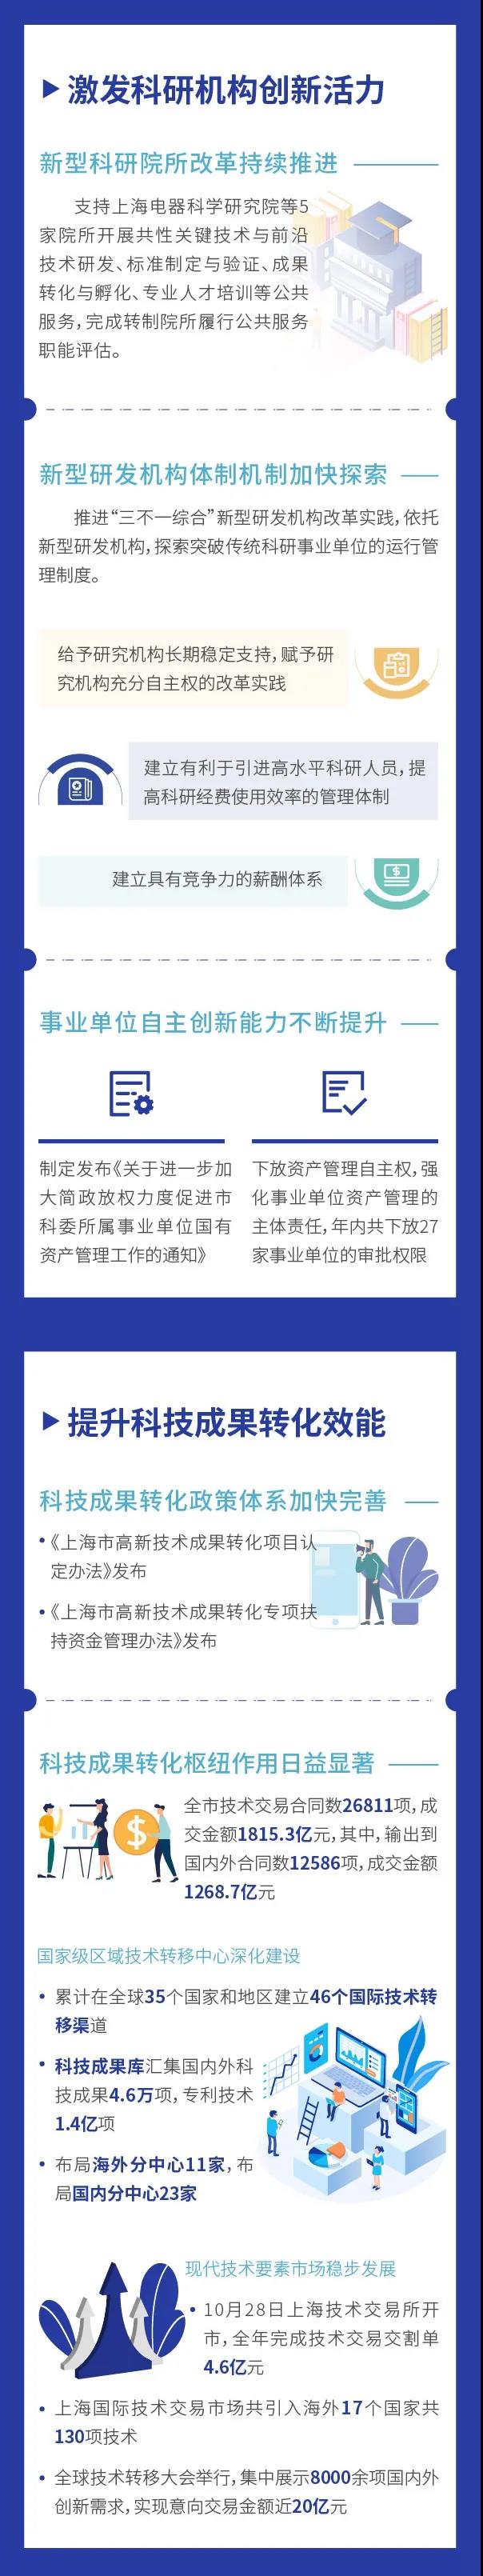 图看《2020上海科技进步报告》⑤3.jpg